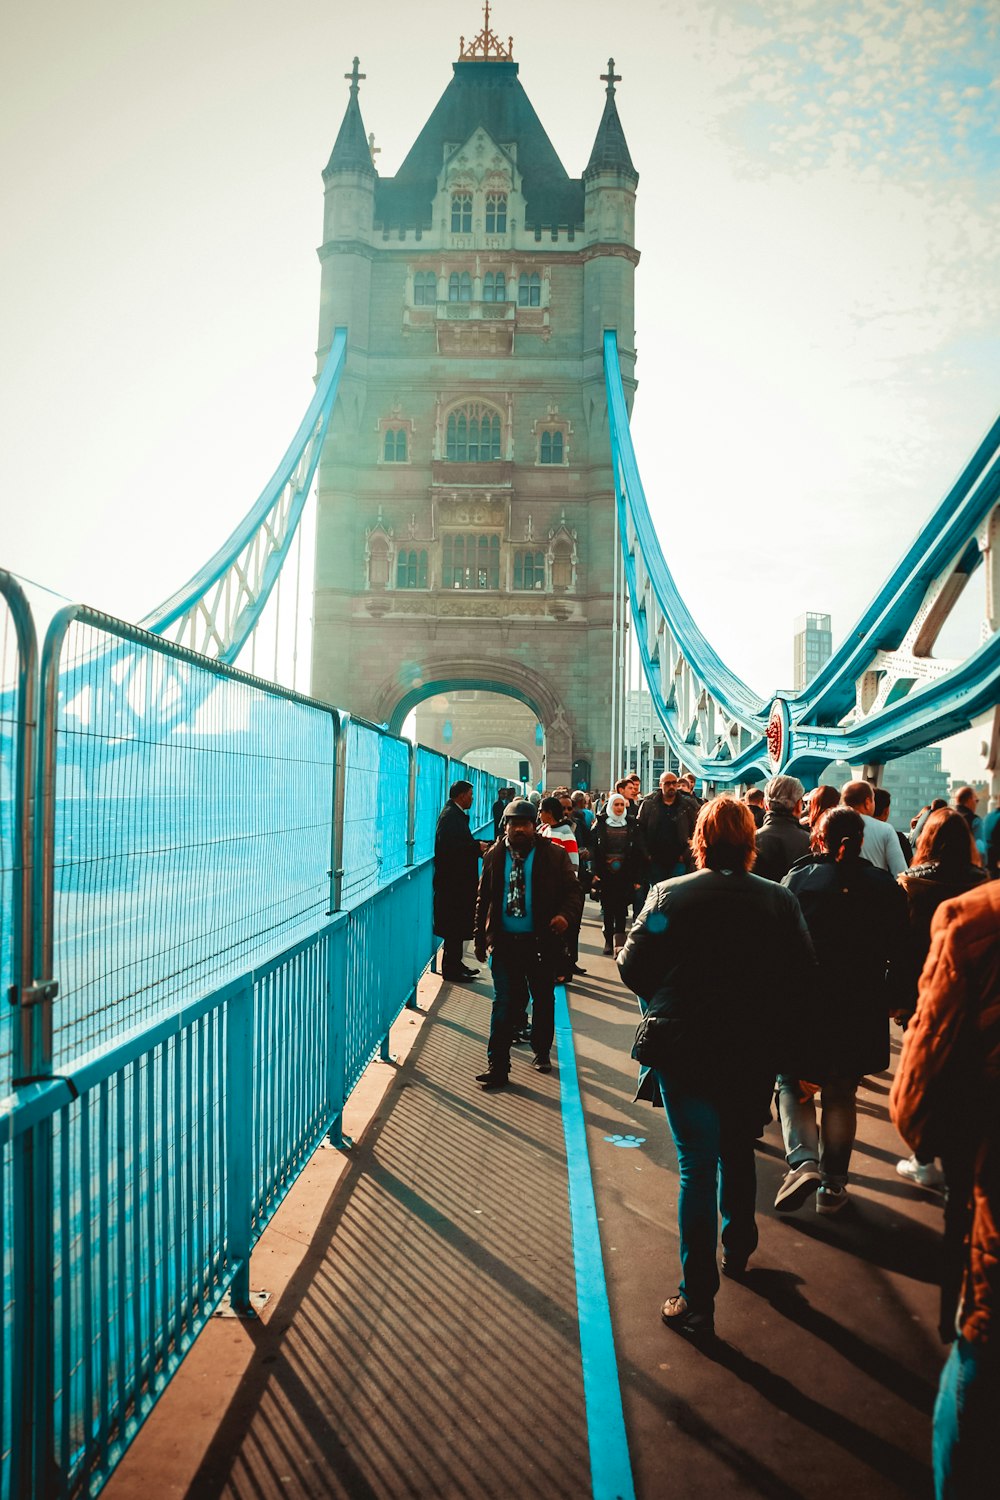 group of people walking on bridge during daytime